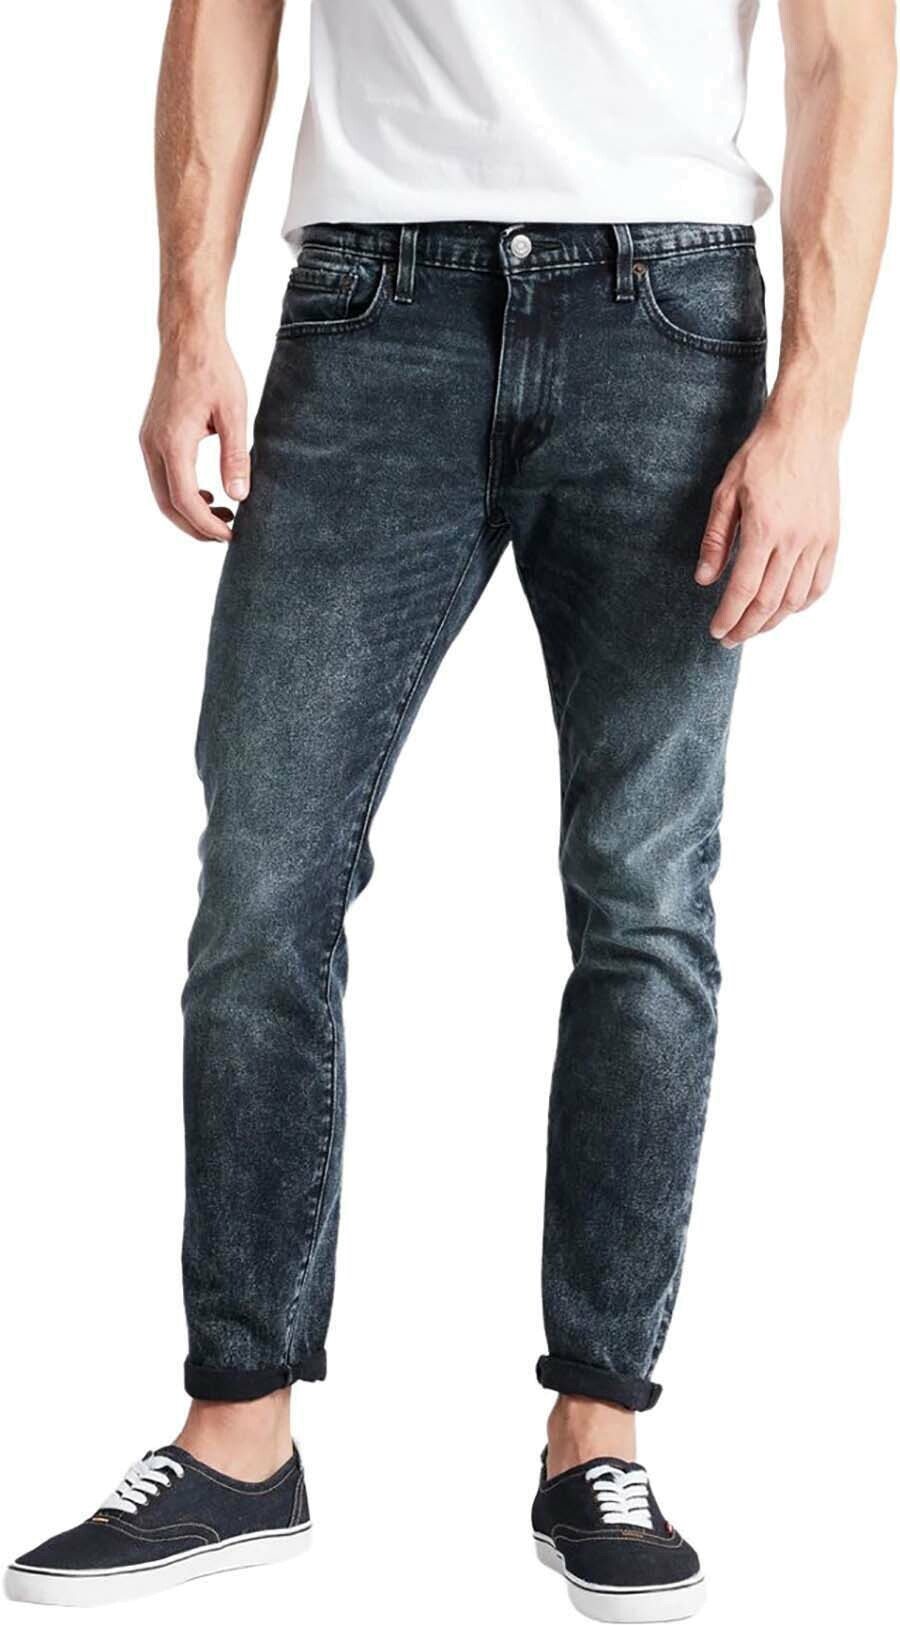 Джинсы Levis 512 SLIM TAPER FIT Jeans (28833-0278) купить за 16 900 руб. в  интернет-магазине JNS